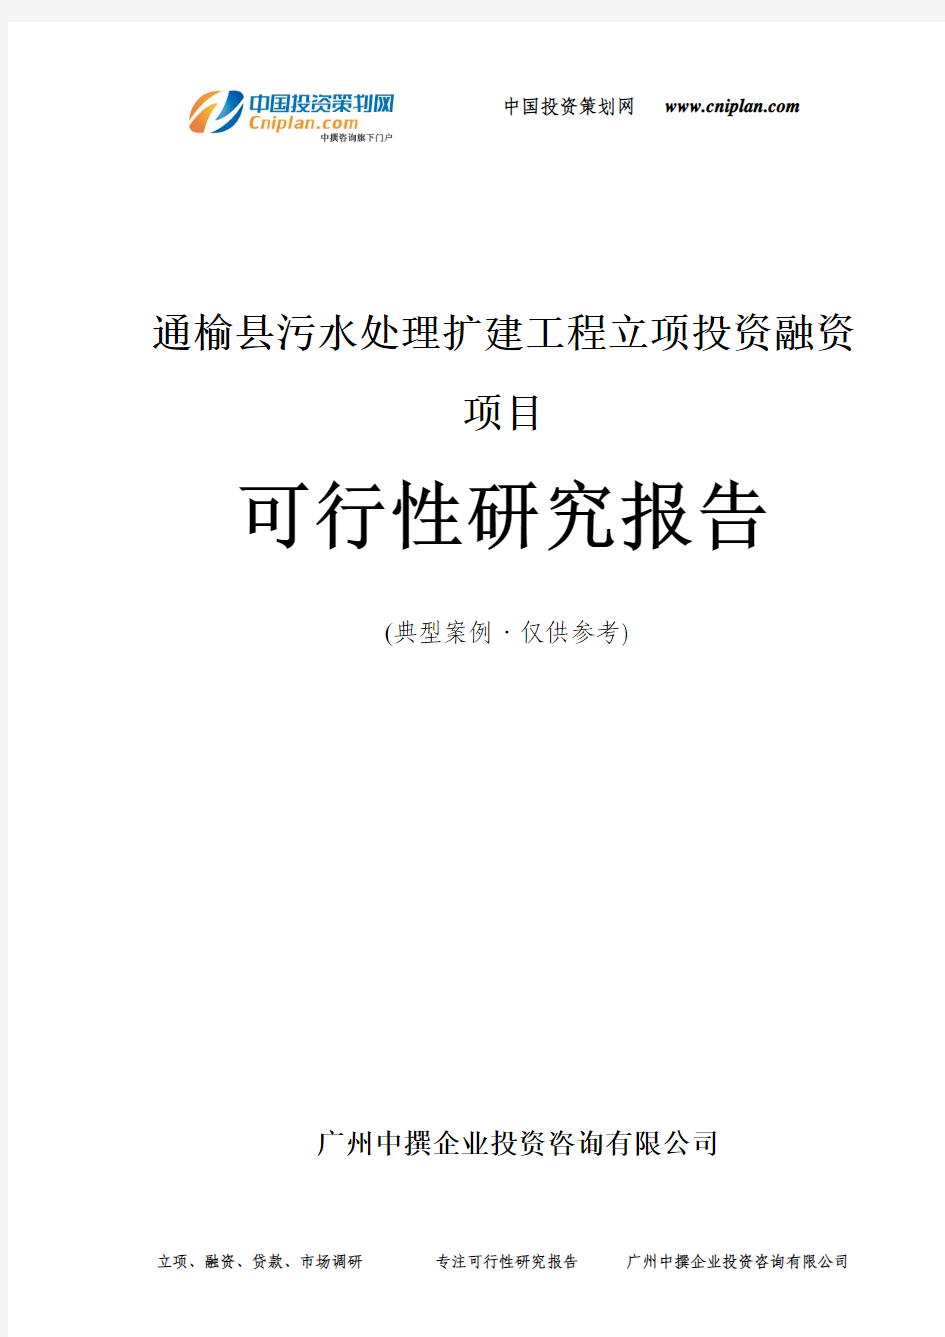 通榆县污水处理扩建工程融资投资立项项目可行性研究报告(中撰咨询)